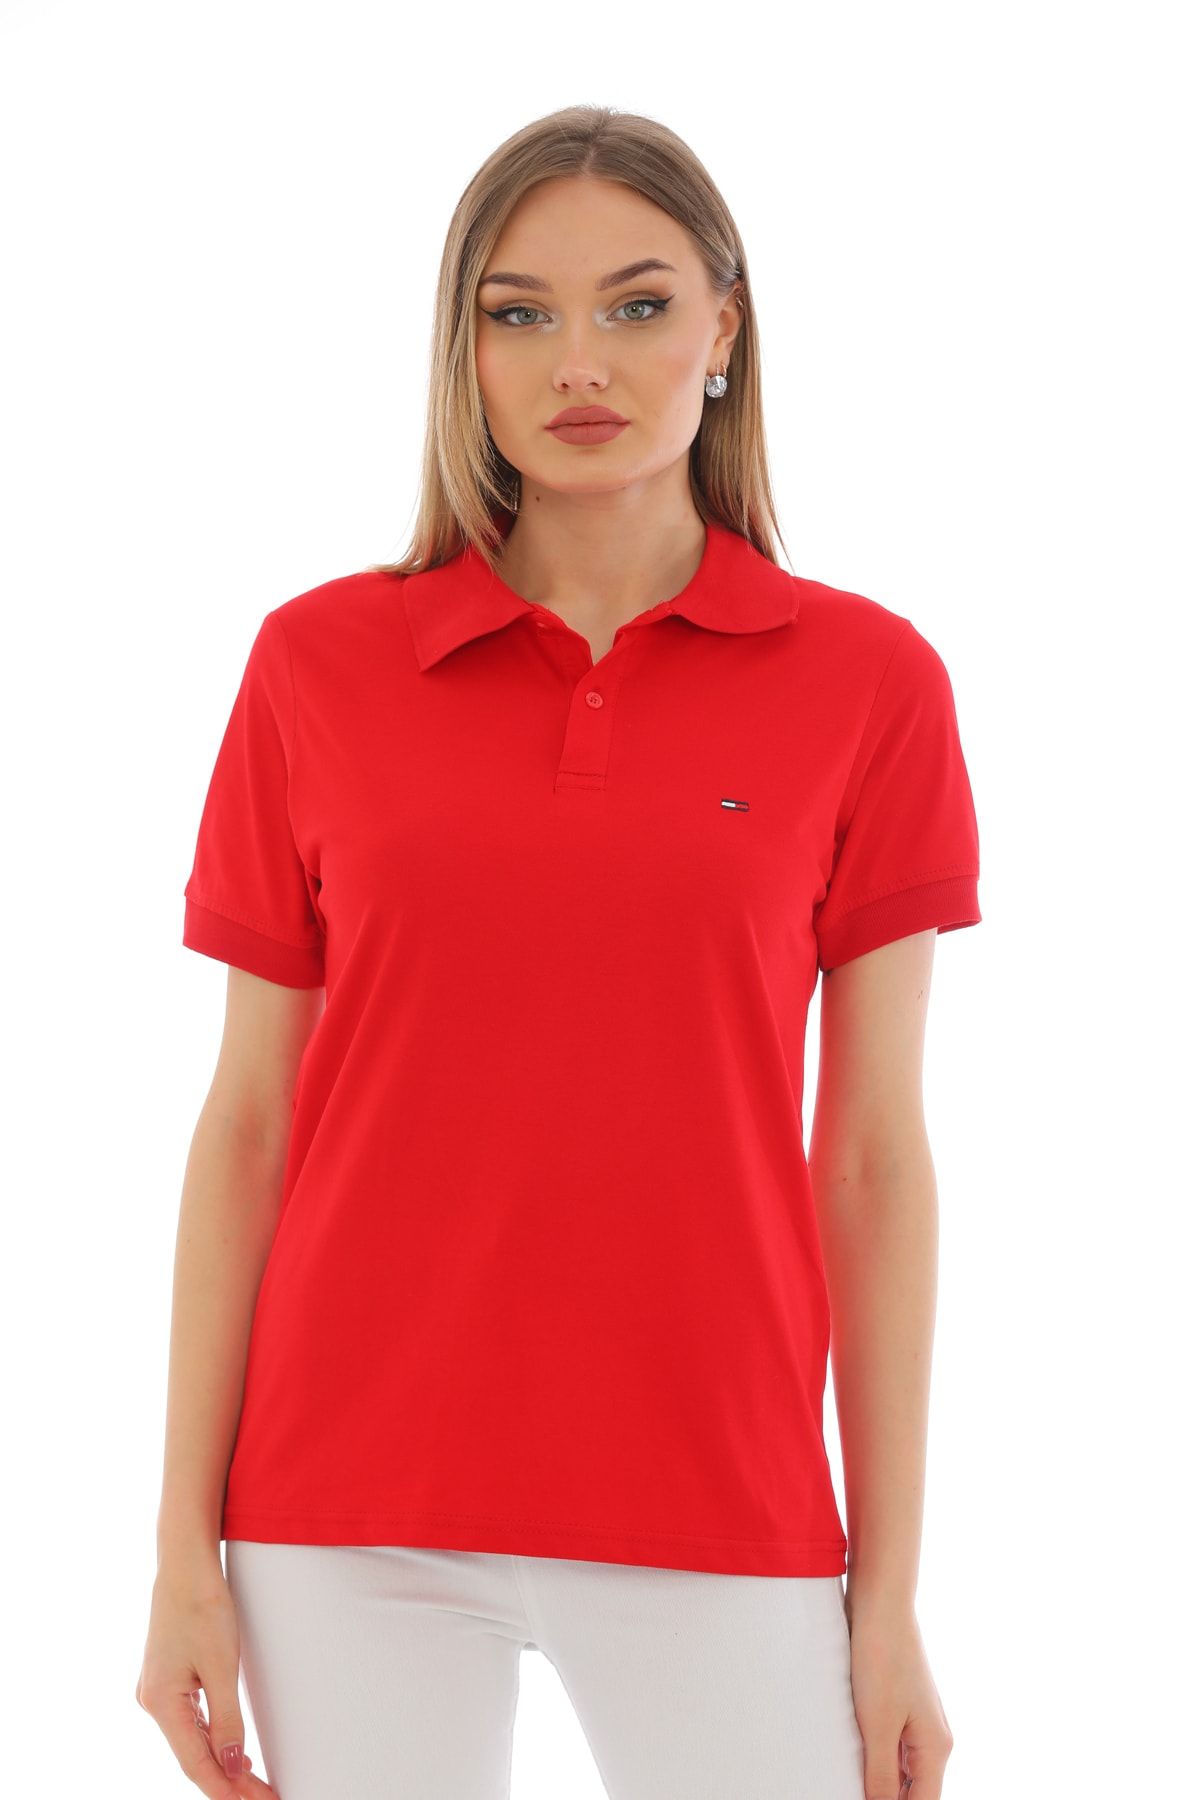 WAPP Kadın Kırmızı Pamuklu Likralı Polo Yaka Kısa Kollu Nakışlı Tişört